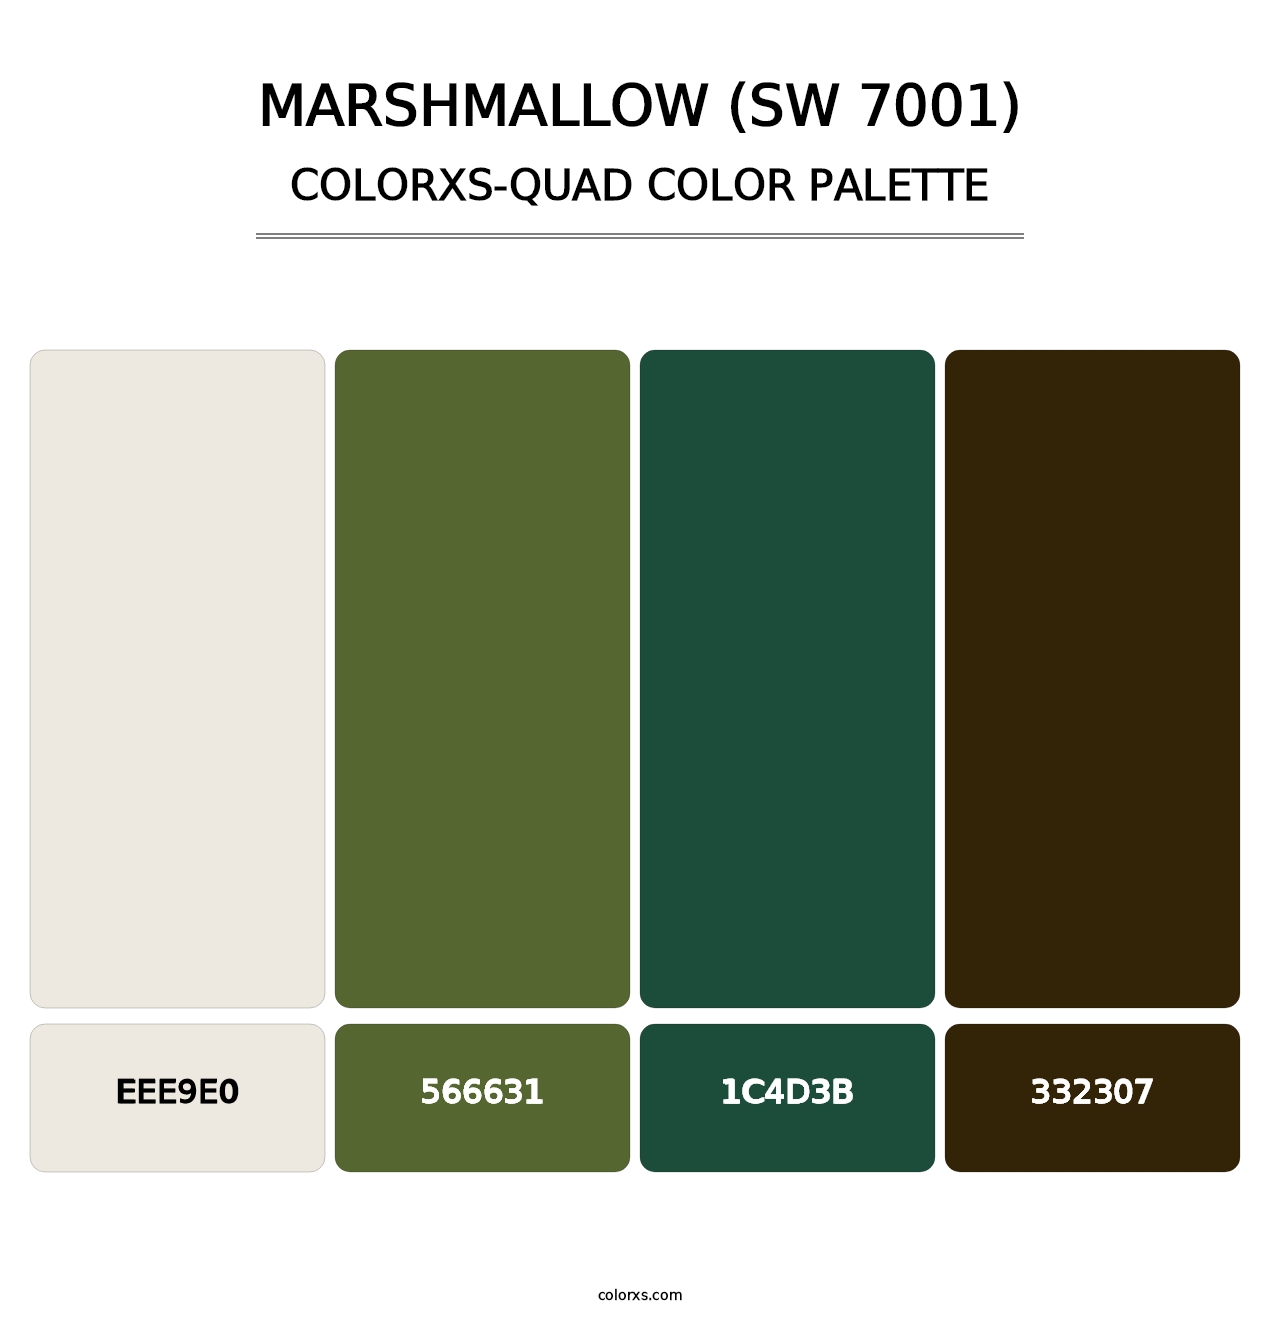 Marshmallow (SW 7001) - Colorxs Quad Palette